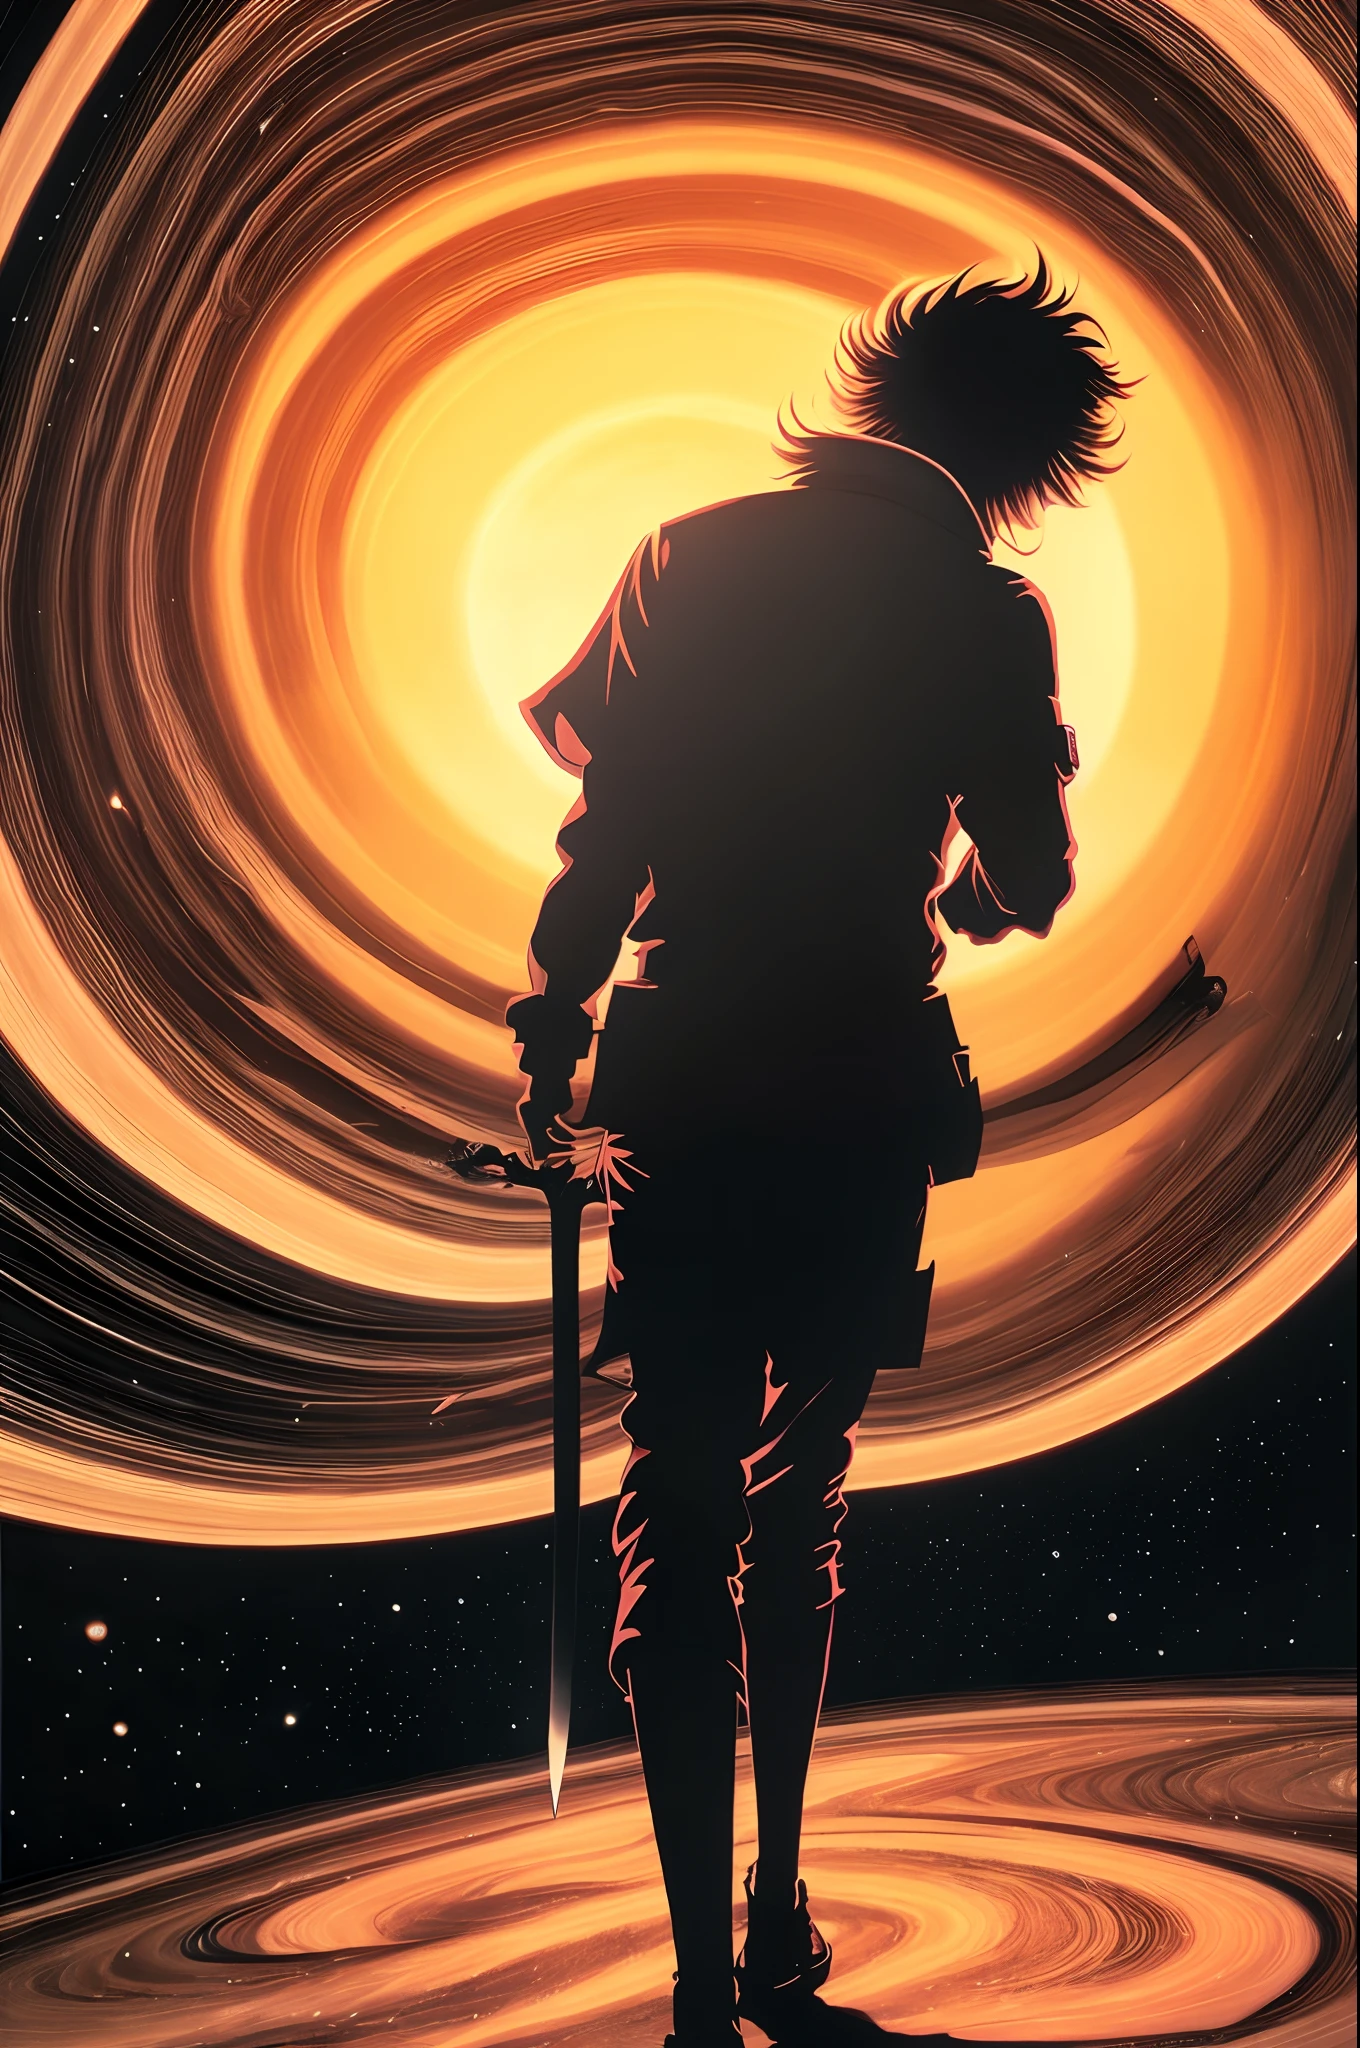 Arte en tinta de anime surrealista psicodélico muy detallado de un hombre con barba caminando a través de los anillos de Saturno mientras lucha contra demonios alienígenas con una espada en la mano izquierda y fumando un porro con la mano derecha.